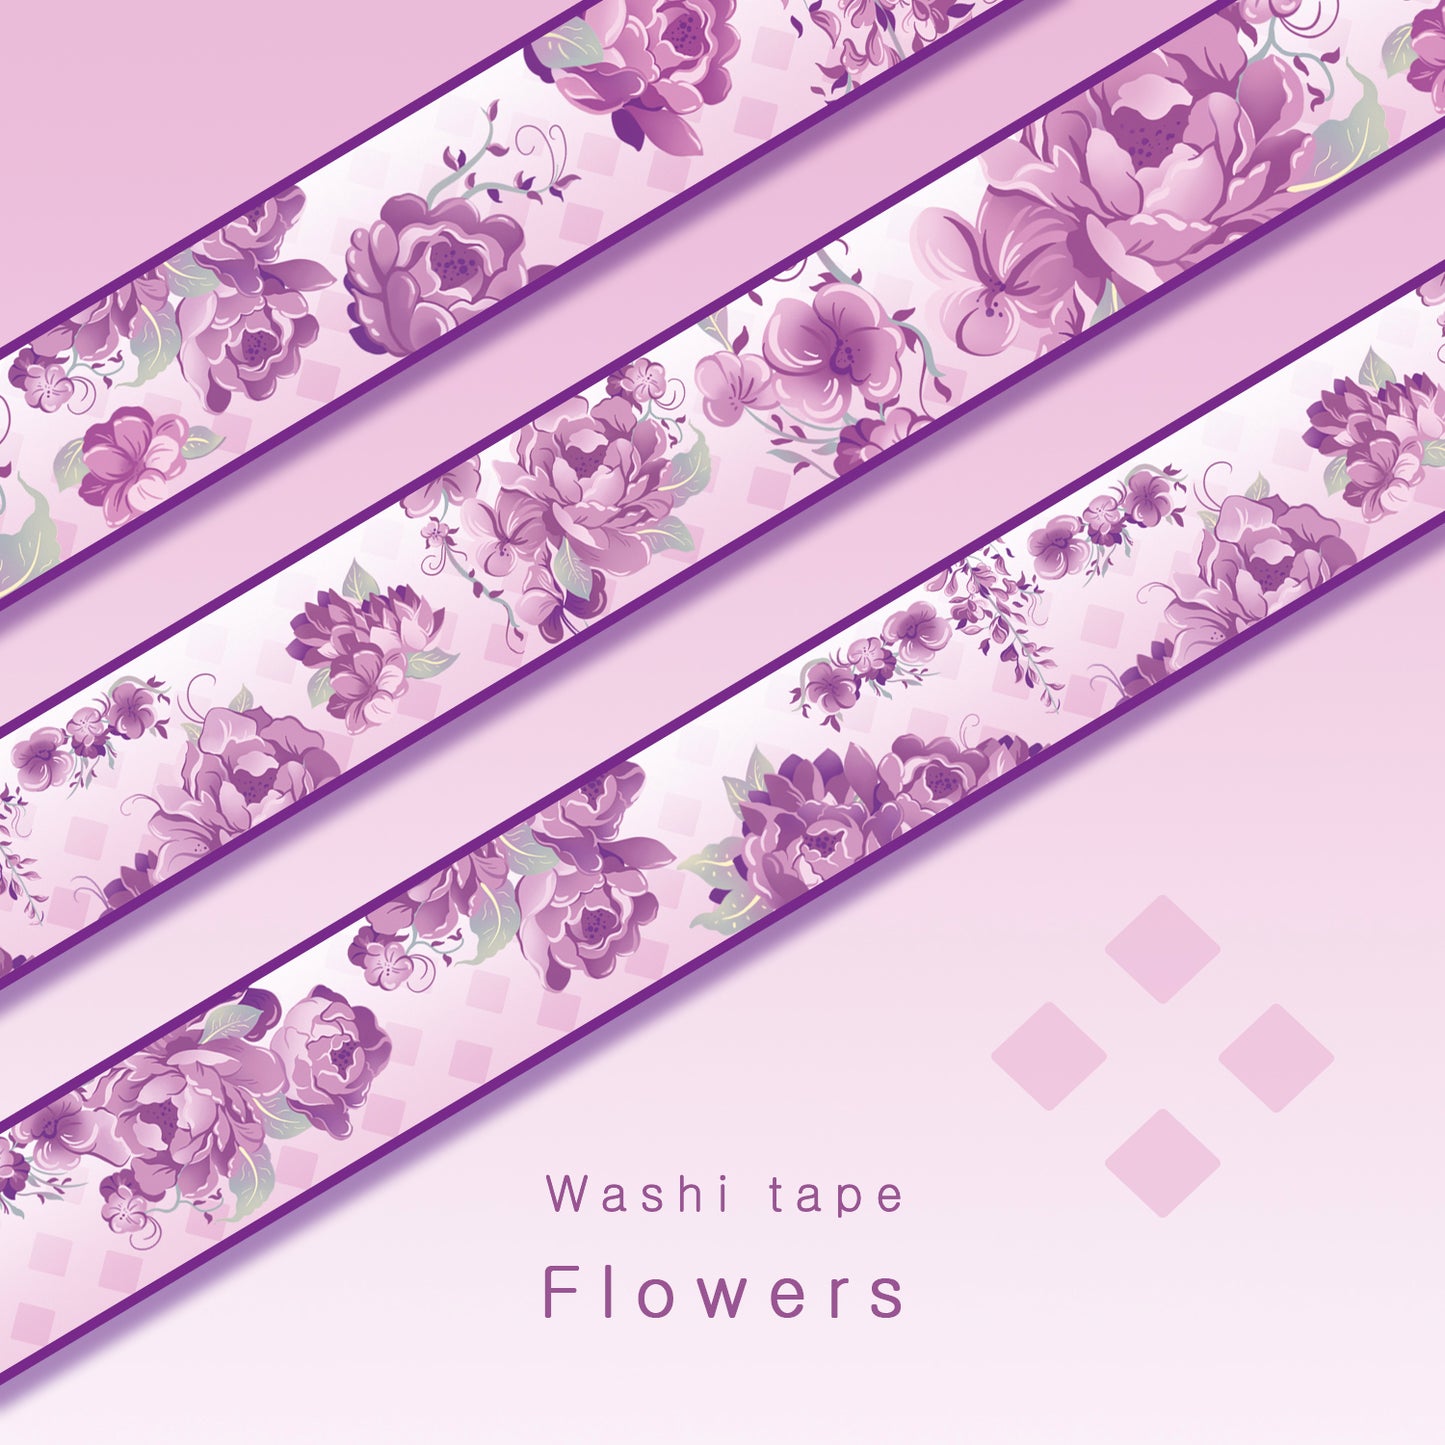 Flowers - Washi tape